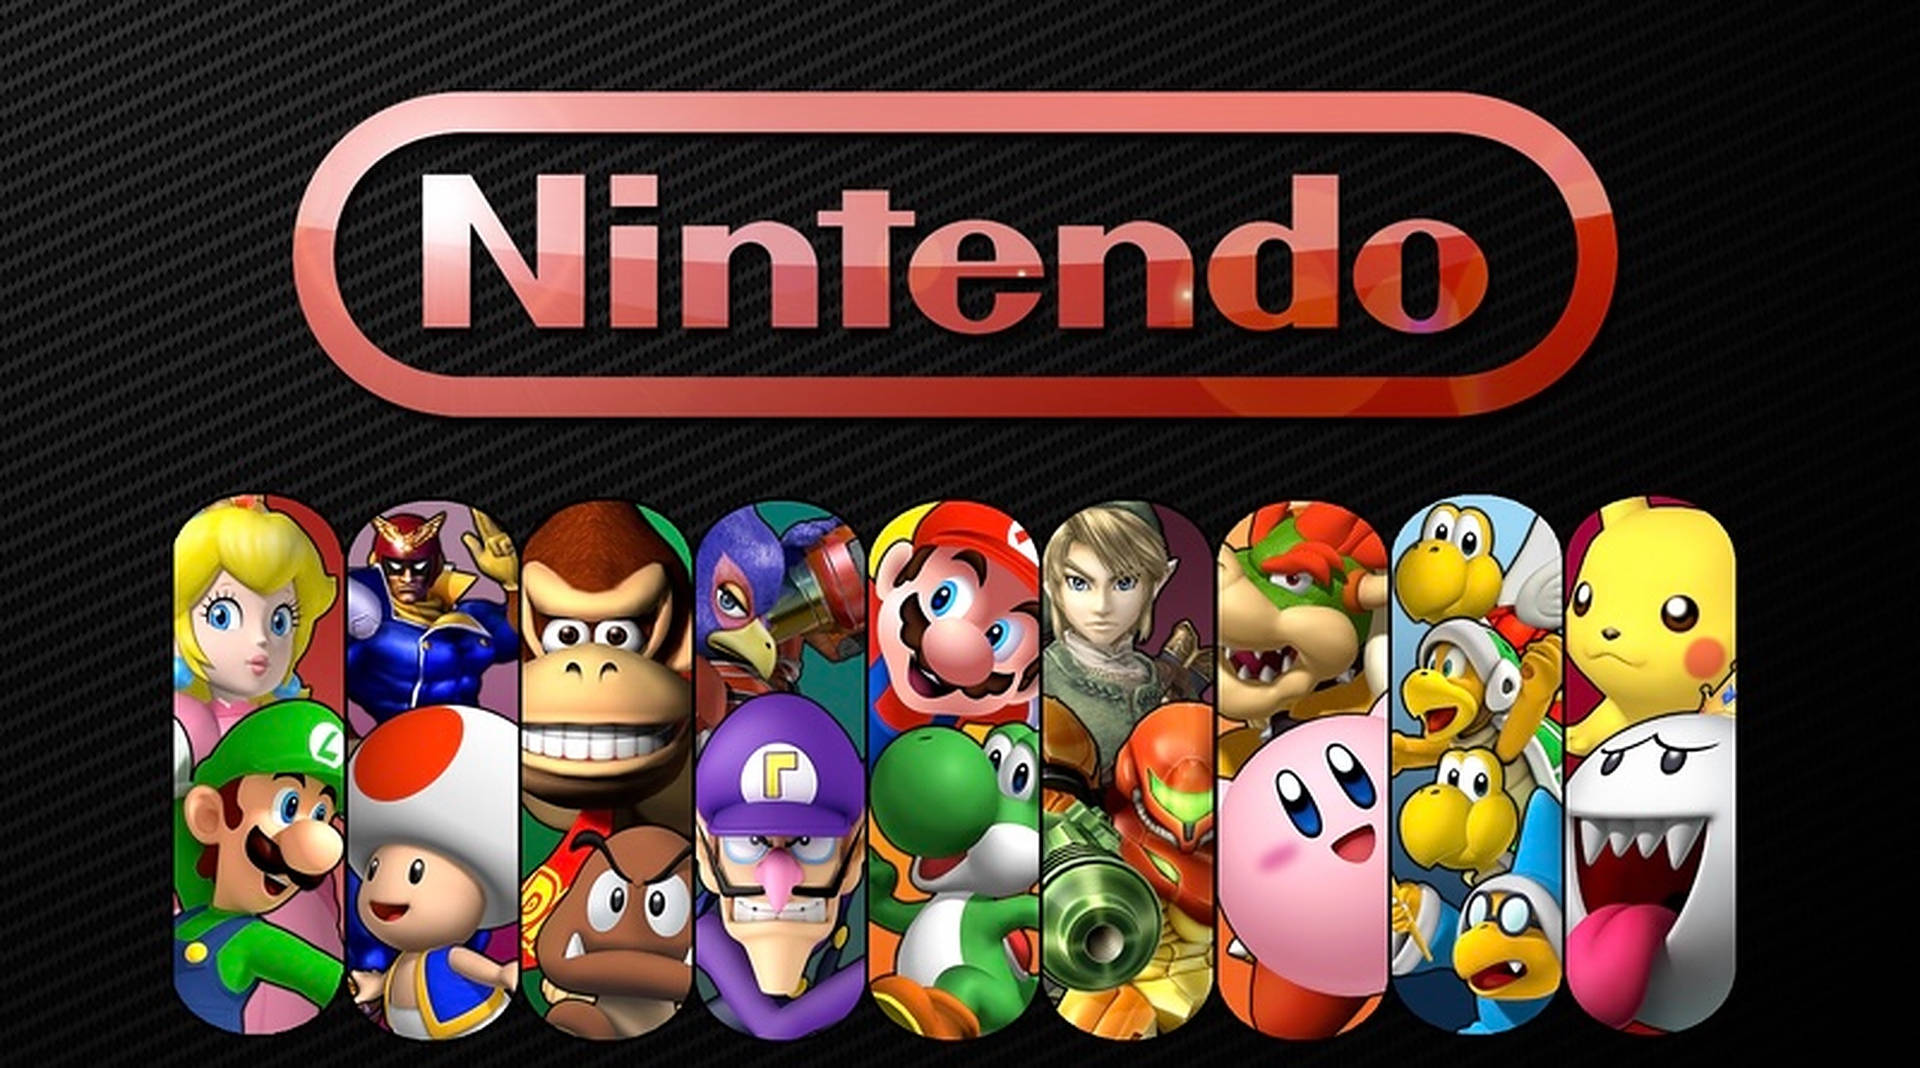 Nintendo Characters Logo